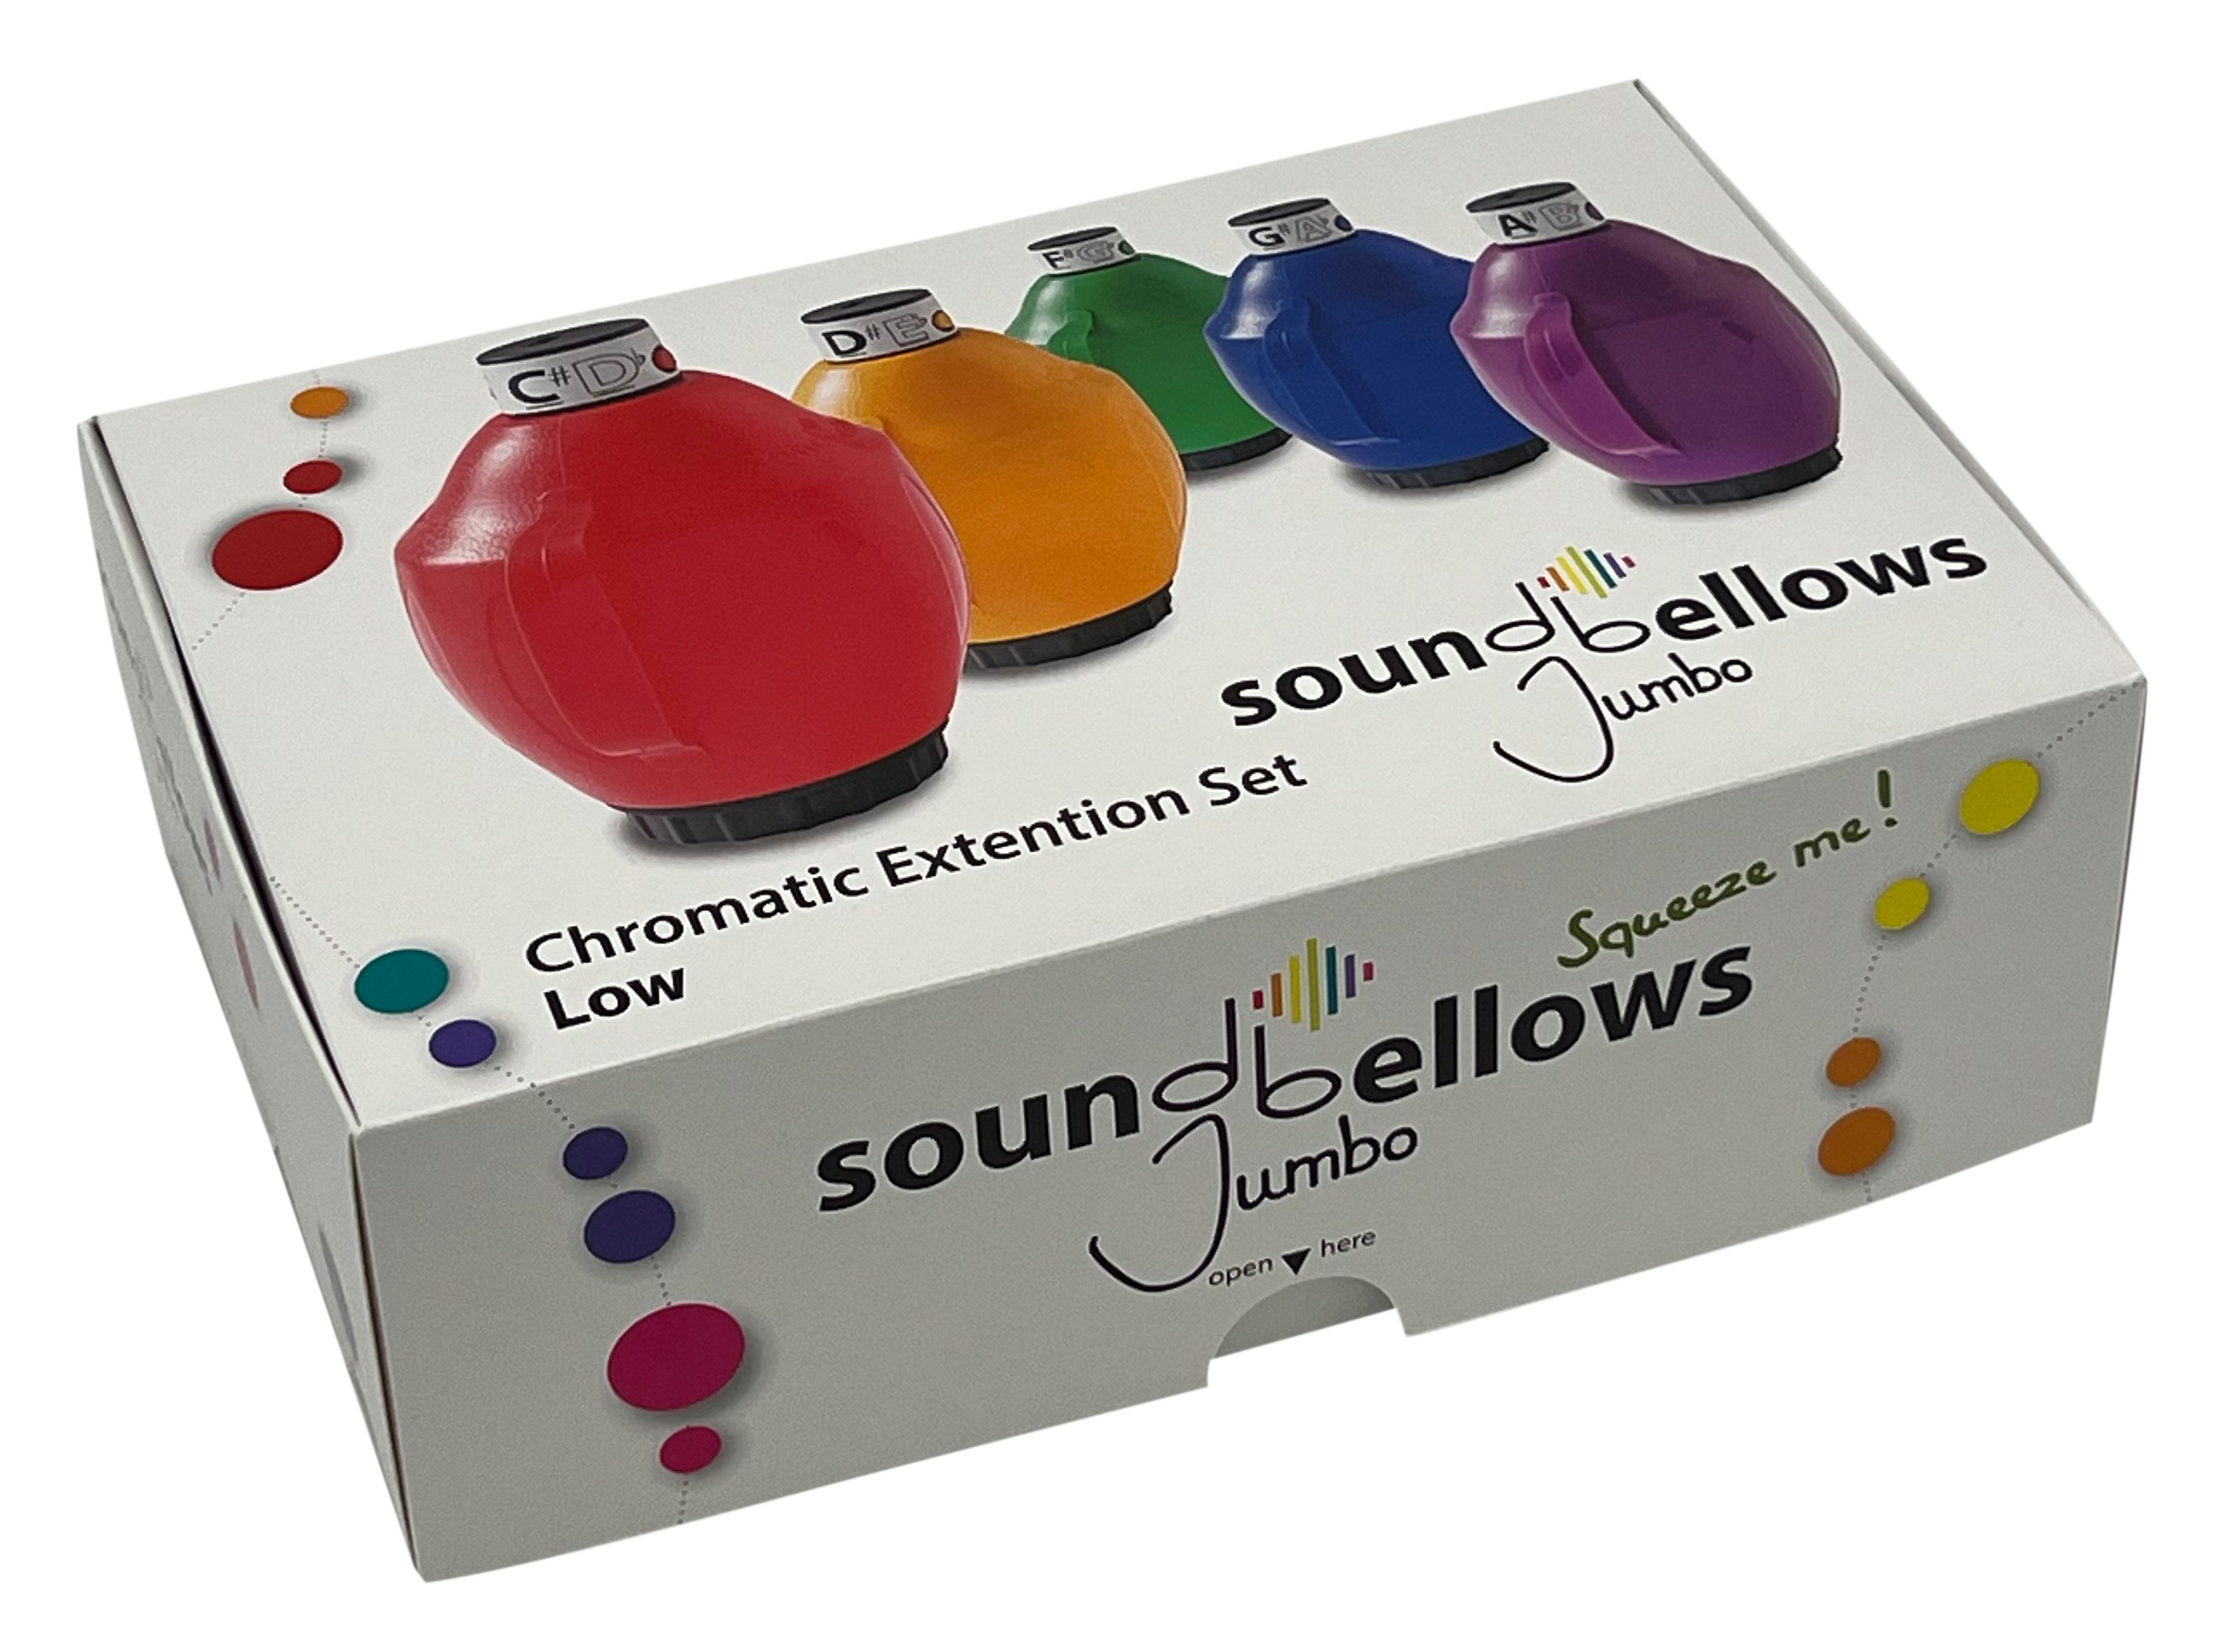 Soundbellows Jumbos - chromatische Ergänzung -  Set tief C#'-A#'